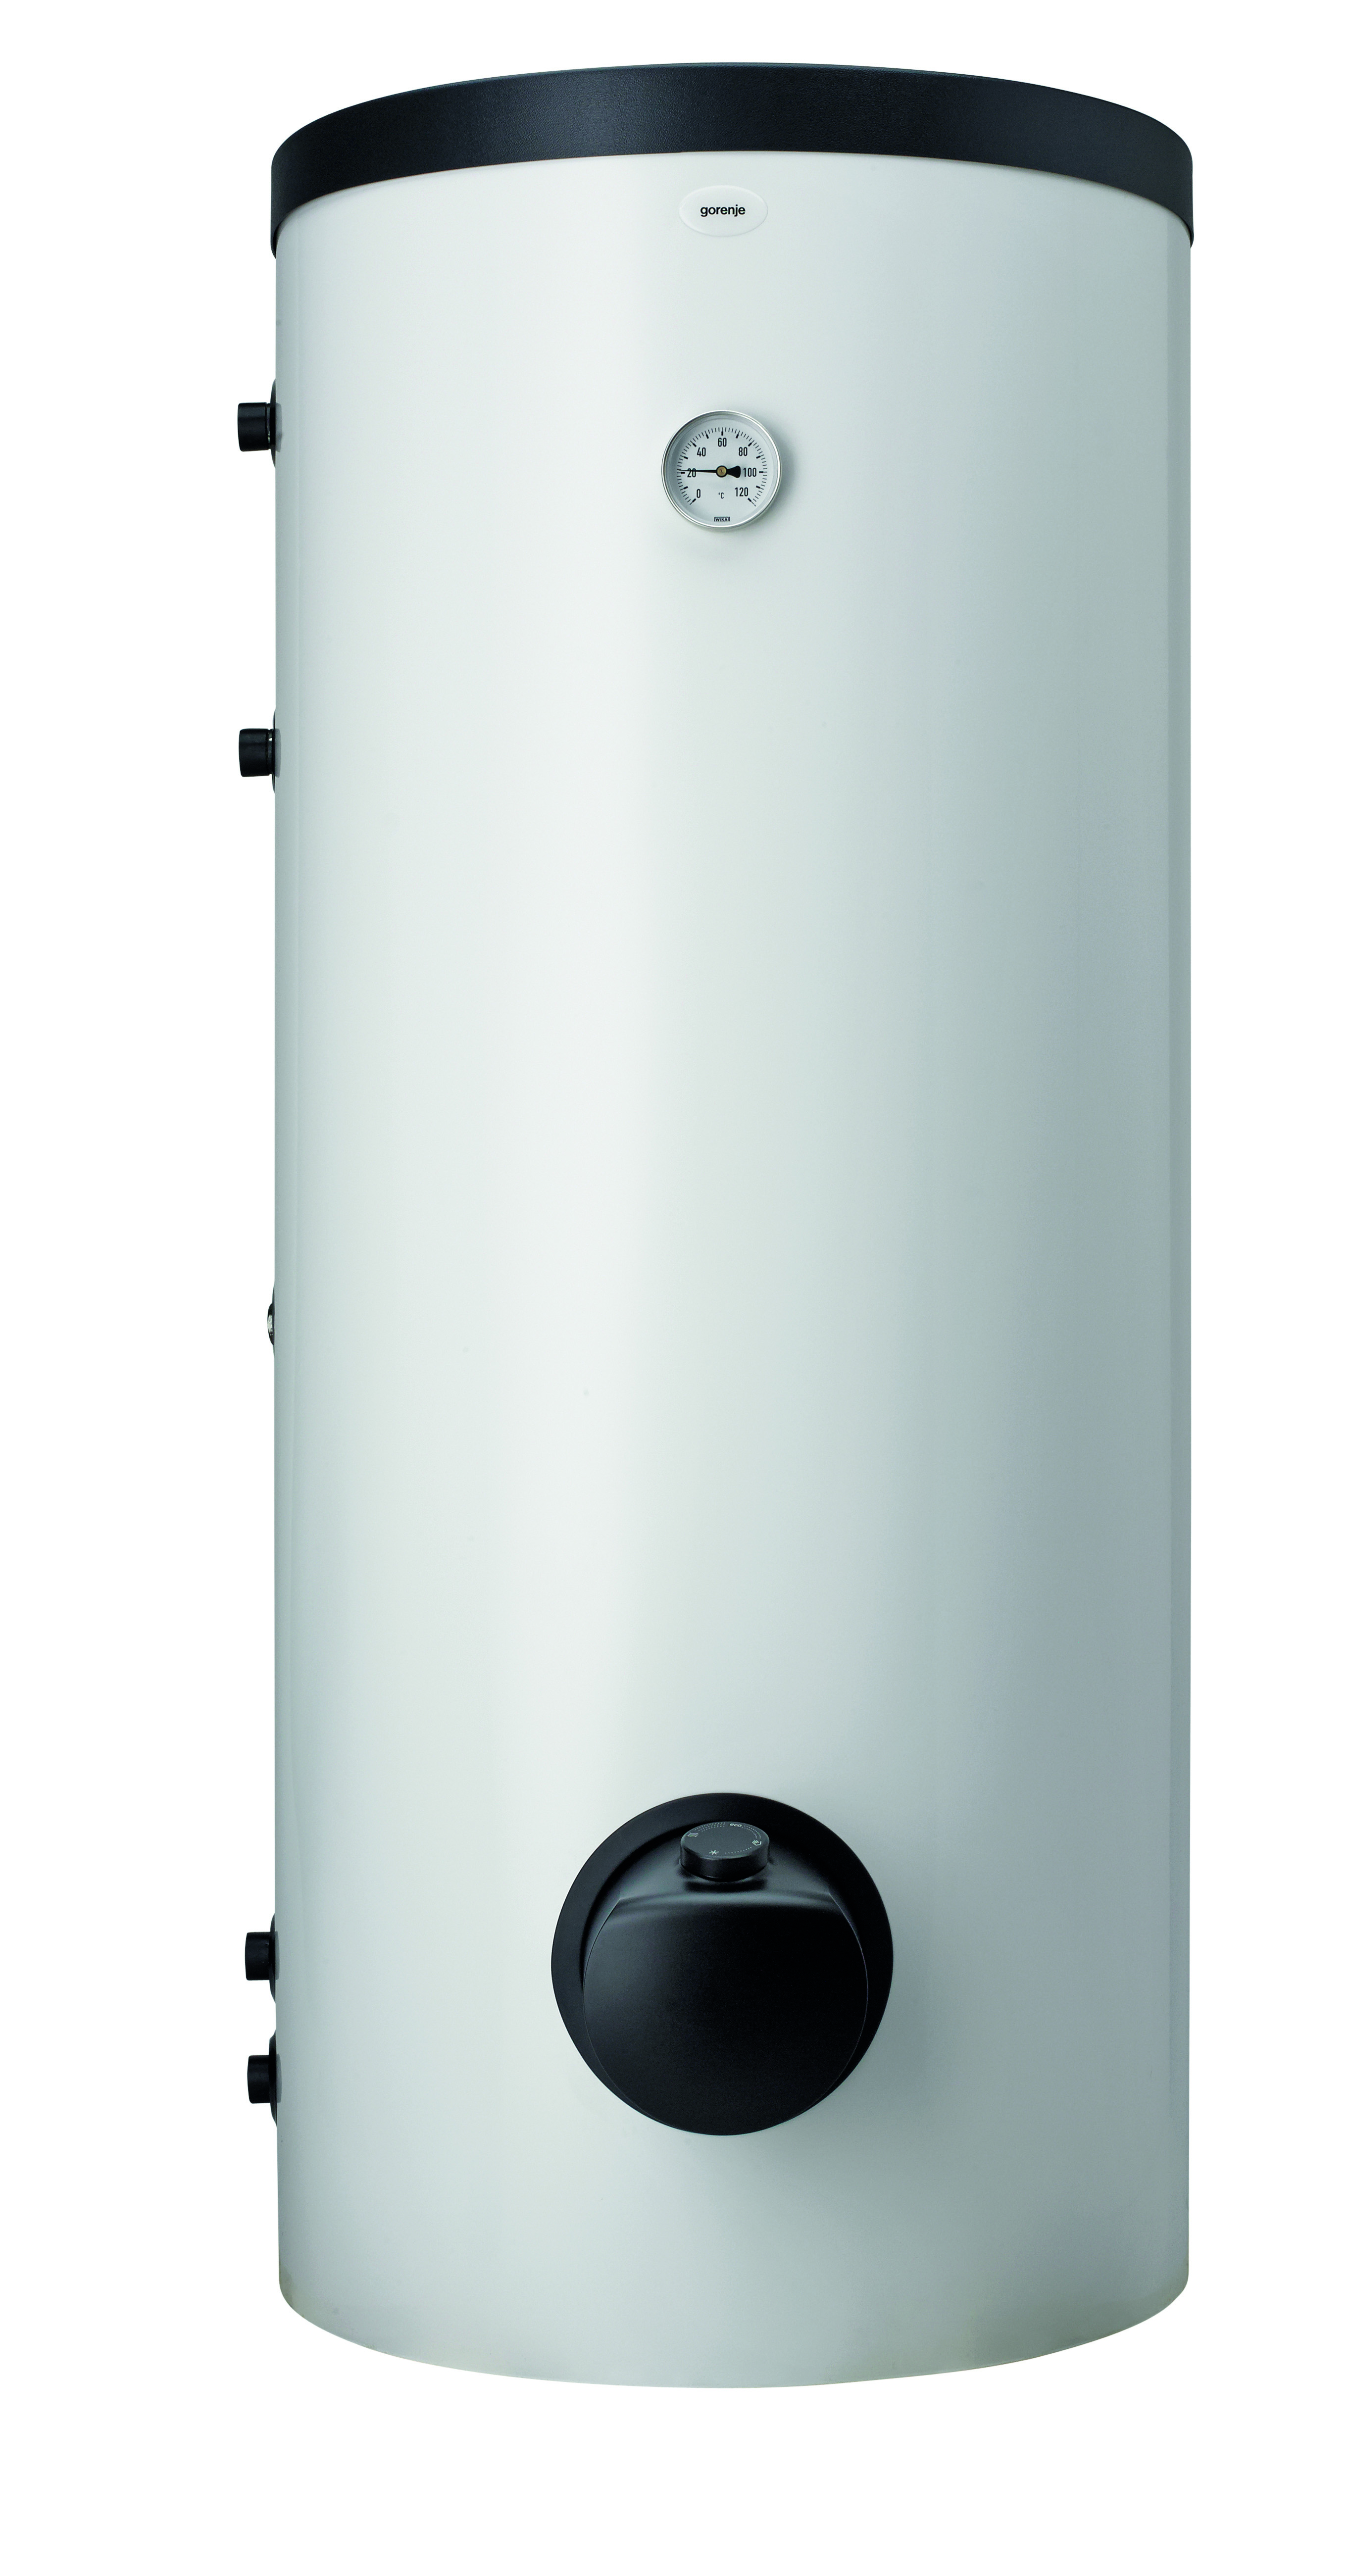 Комбинированный водонагреватель Gorenje VLG300C1-1G3 в интернет-магазине, главное фото